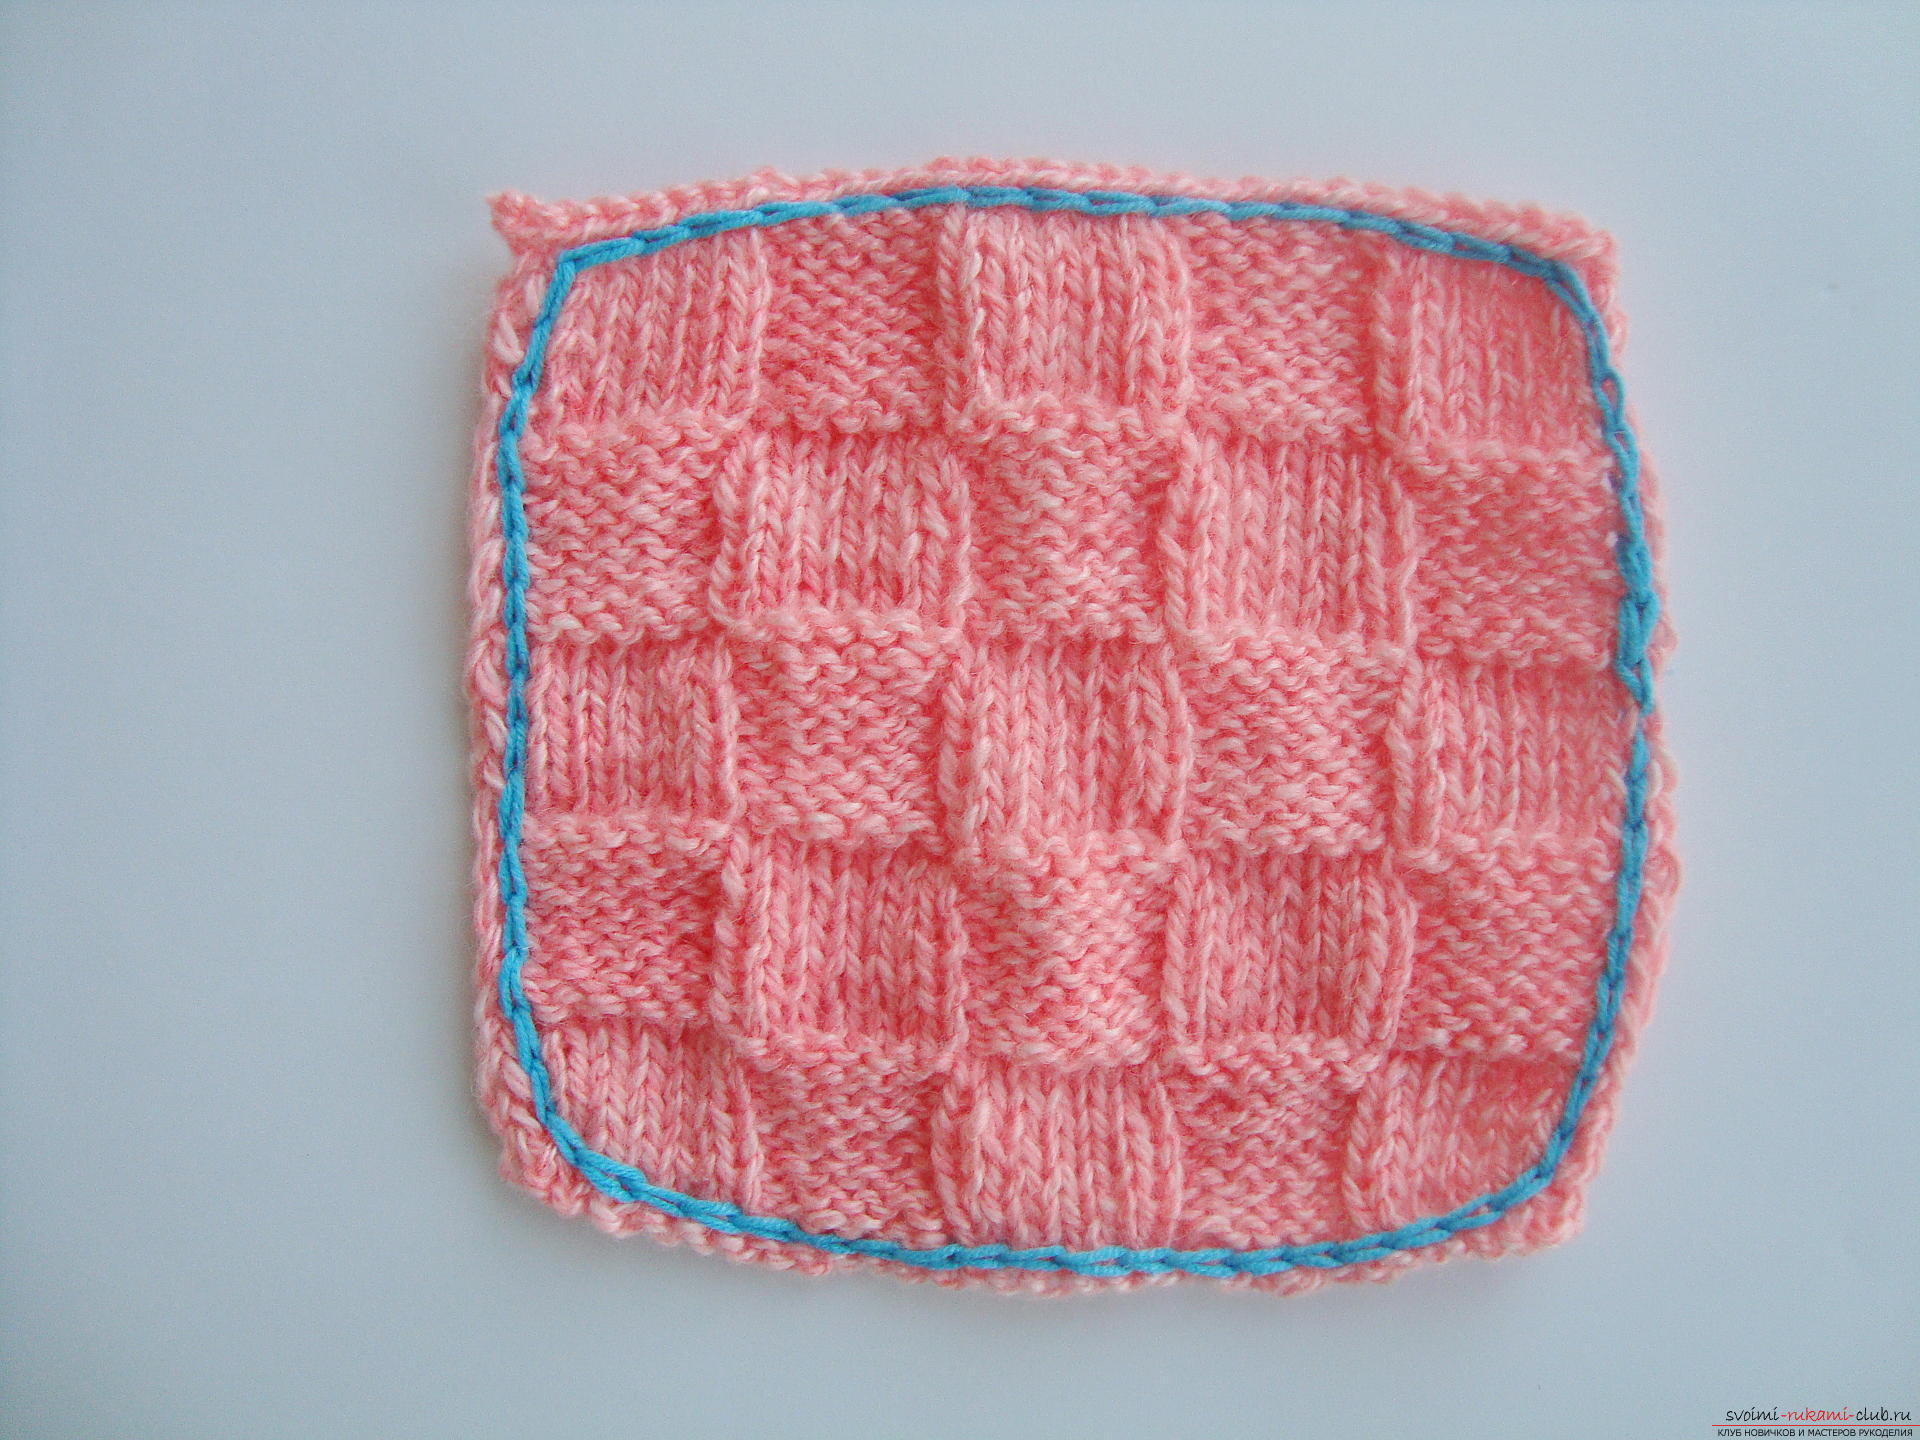 Photo-instruction on knitting needles-napkins under the hot. Photo №13